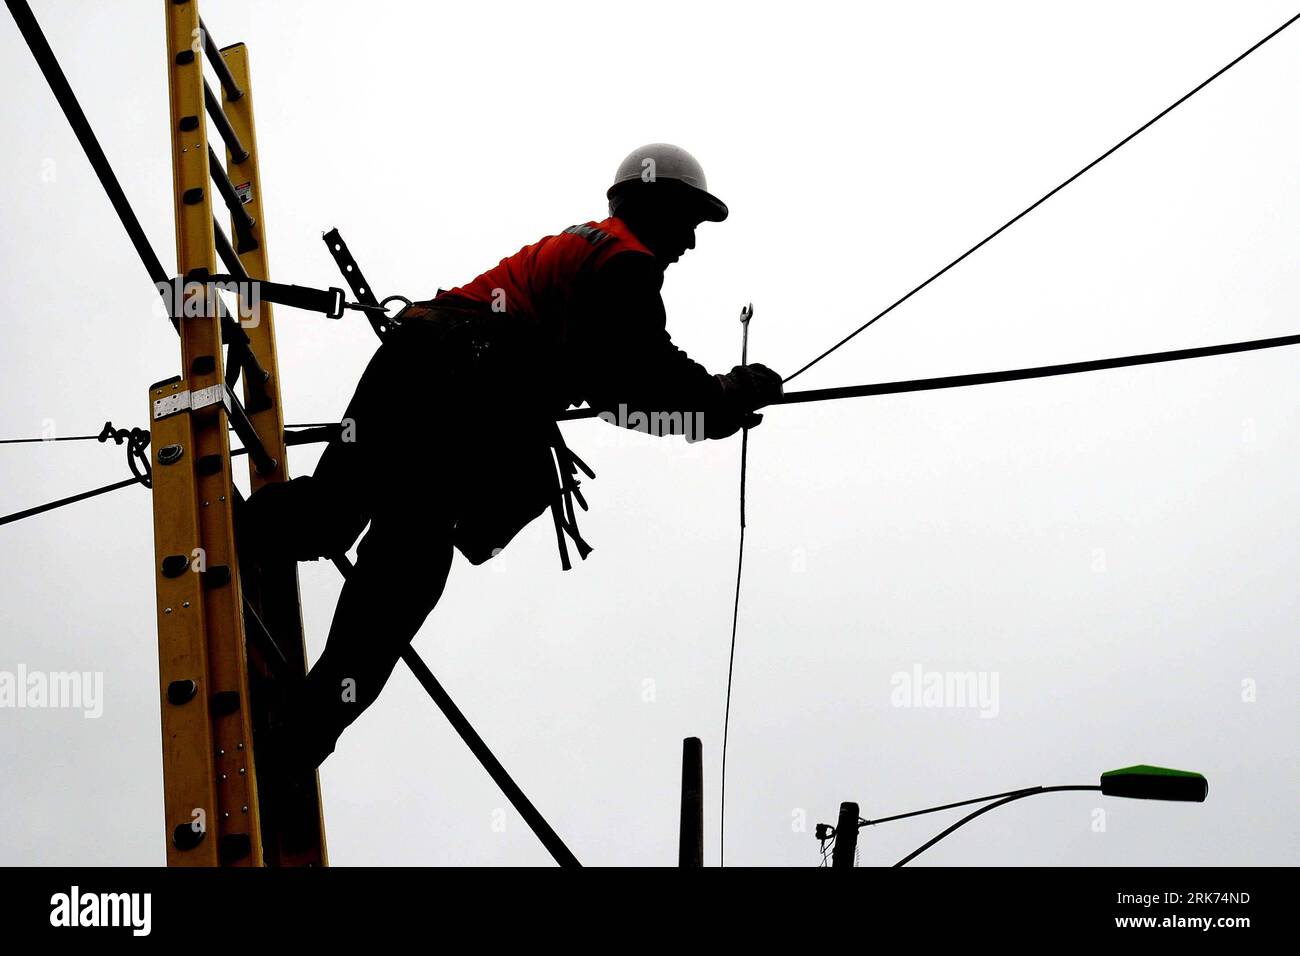 Bildnummer: 53862421 Datum: 16.03.2010 Copyright: imago/Xinhua (100317) -- TALCAHUANO, 17 marzo 2010 (Xinhua) -- Un lavoratore ripara impianti elettrici a Talcahuano, Cile, il 16 marzo 2010. La stima preliminare mostra che il Cile ha bisogno di 30 miliardi di dollari per la riparazione in seguito al terremoto di magnitudo 8,8 del febbraio 27, ha detto martedì il presidente Sebastian Pinera. (Xinhua/Camila Lassalle) (ypf) (8)CILE-TERREMOTO-TALCAHUANO-RESTAURO PUBLICATIONxNOTxINxCHN Naturkatastrophe Erdbeben Chile Aufräumarbeiten Gesellschaft premiumd xint kbdig xsk 2010 quer o0 Strommast Elektrizität Bildnummer 53862421 Foto Stock